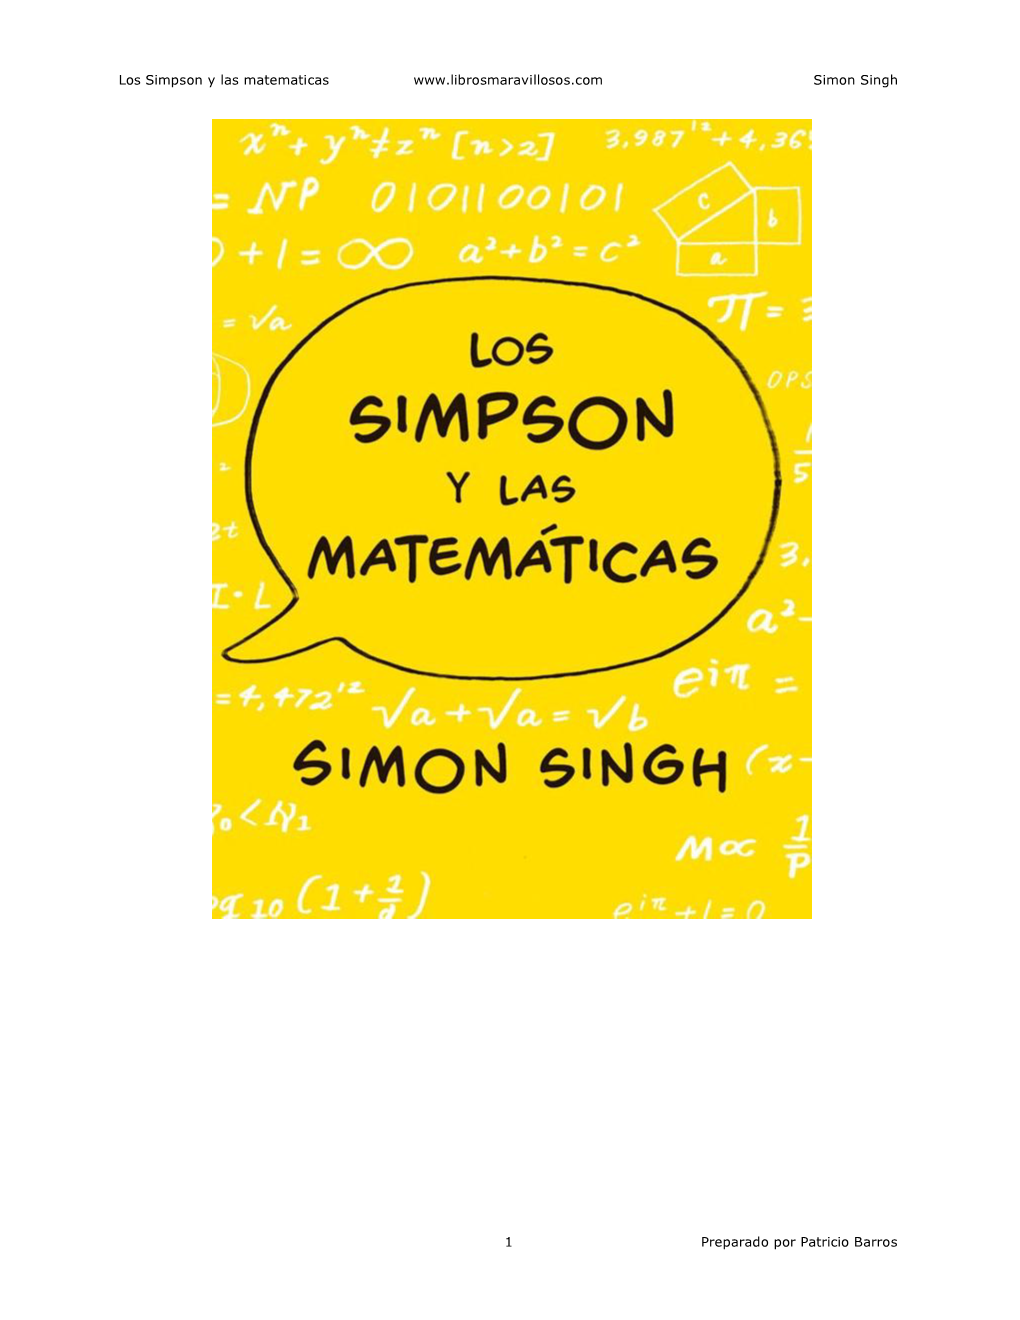 Los Simpson Y Las Matematicas Simon Singh